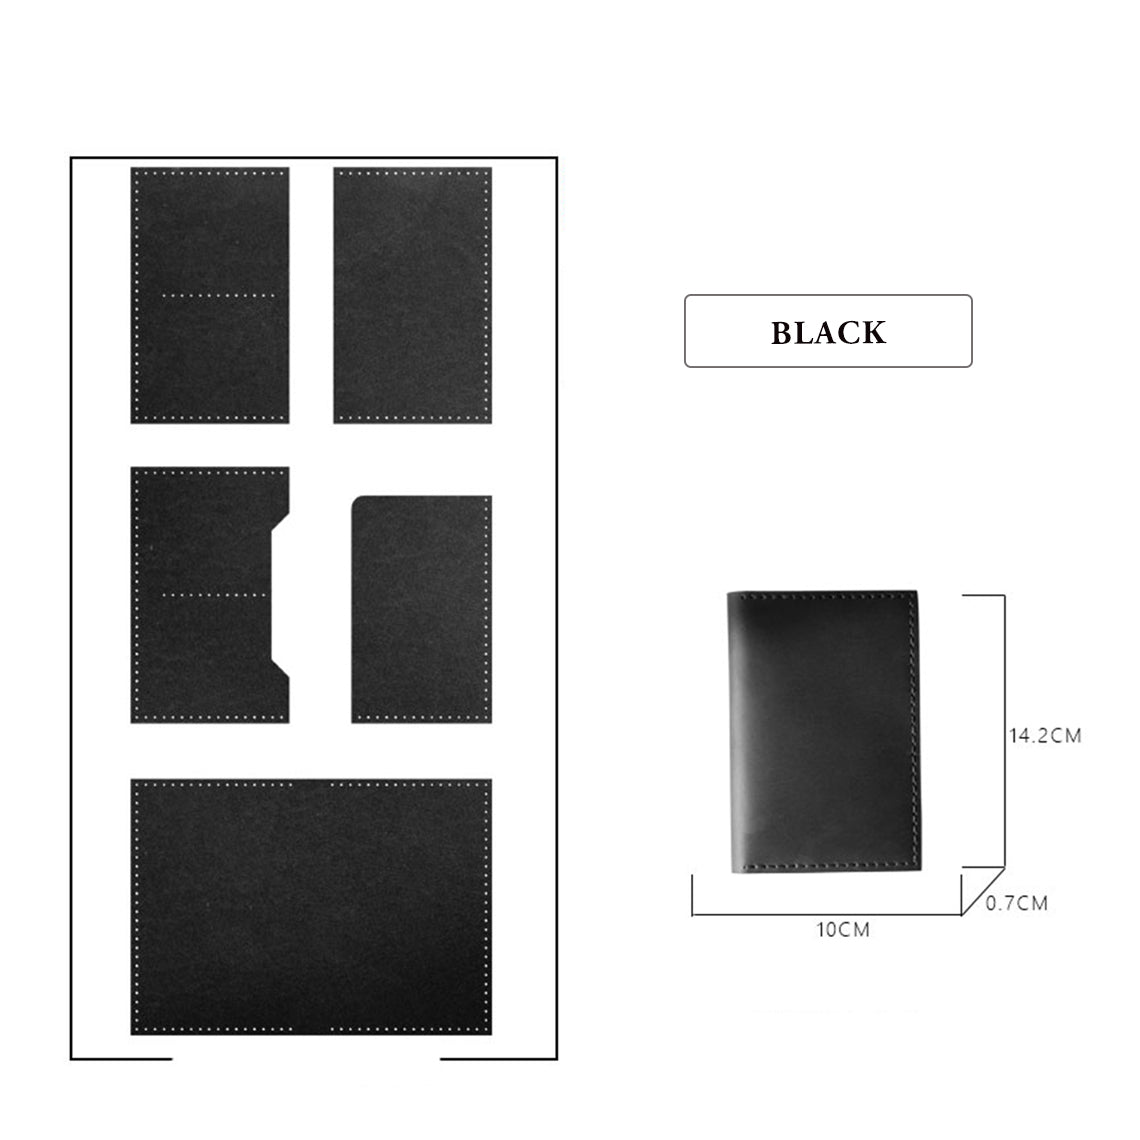 Black Leather Wallet DIY Patterns - POPSEWING®